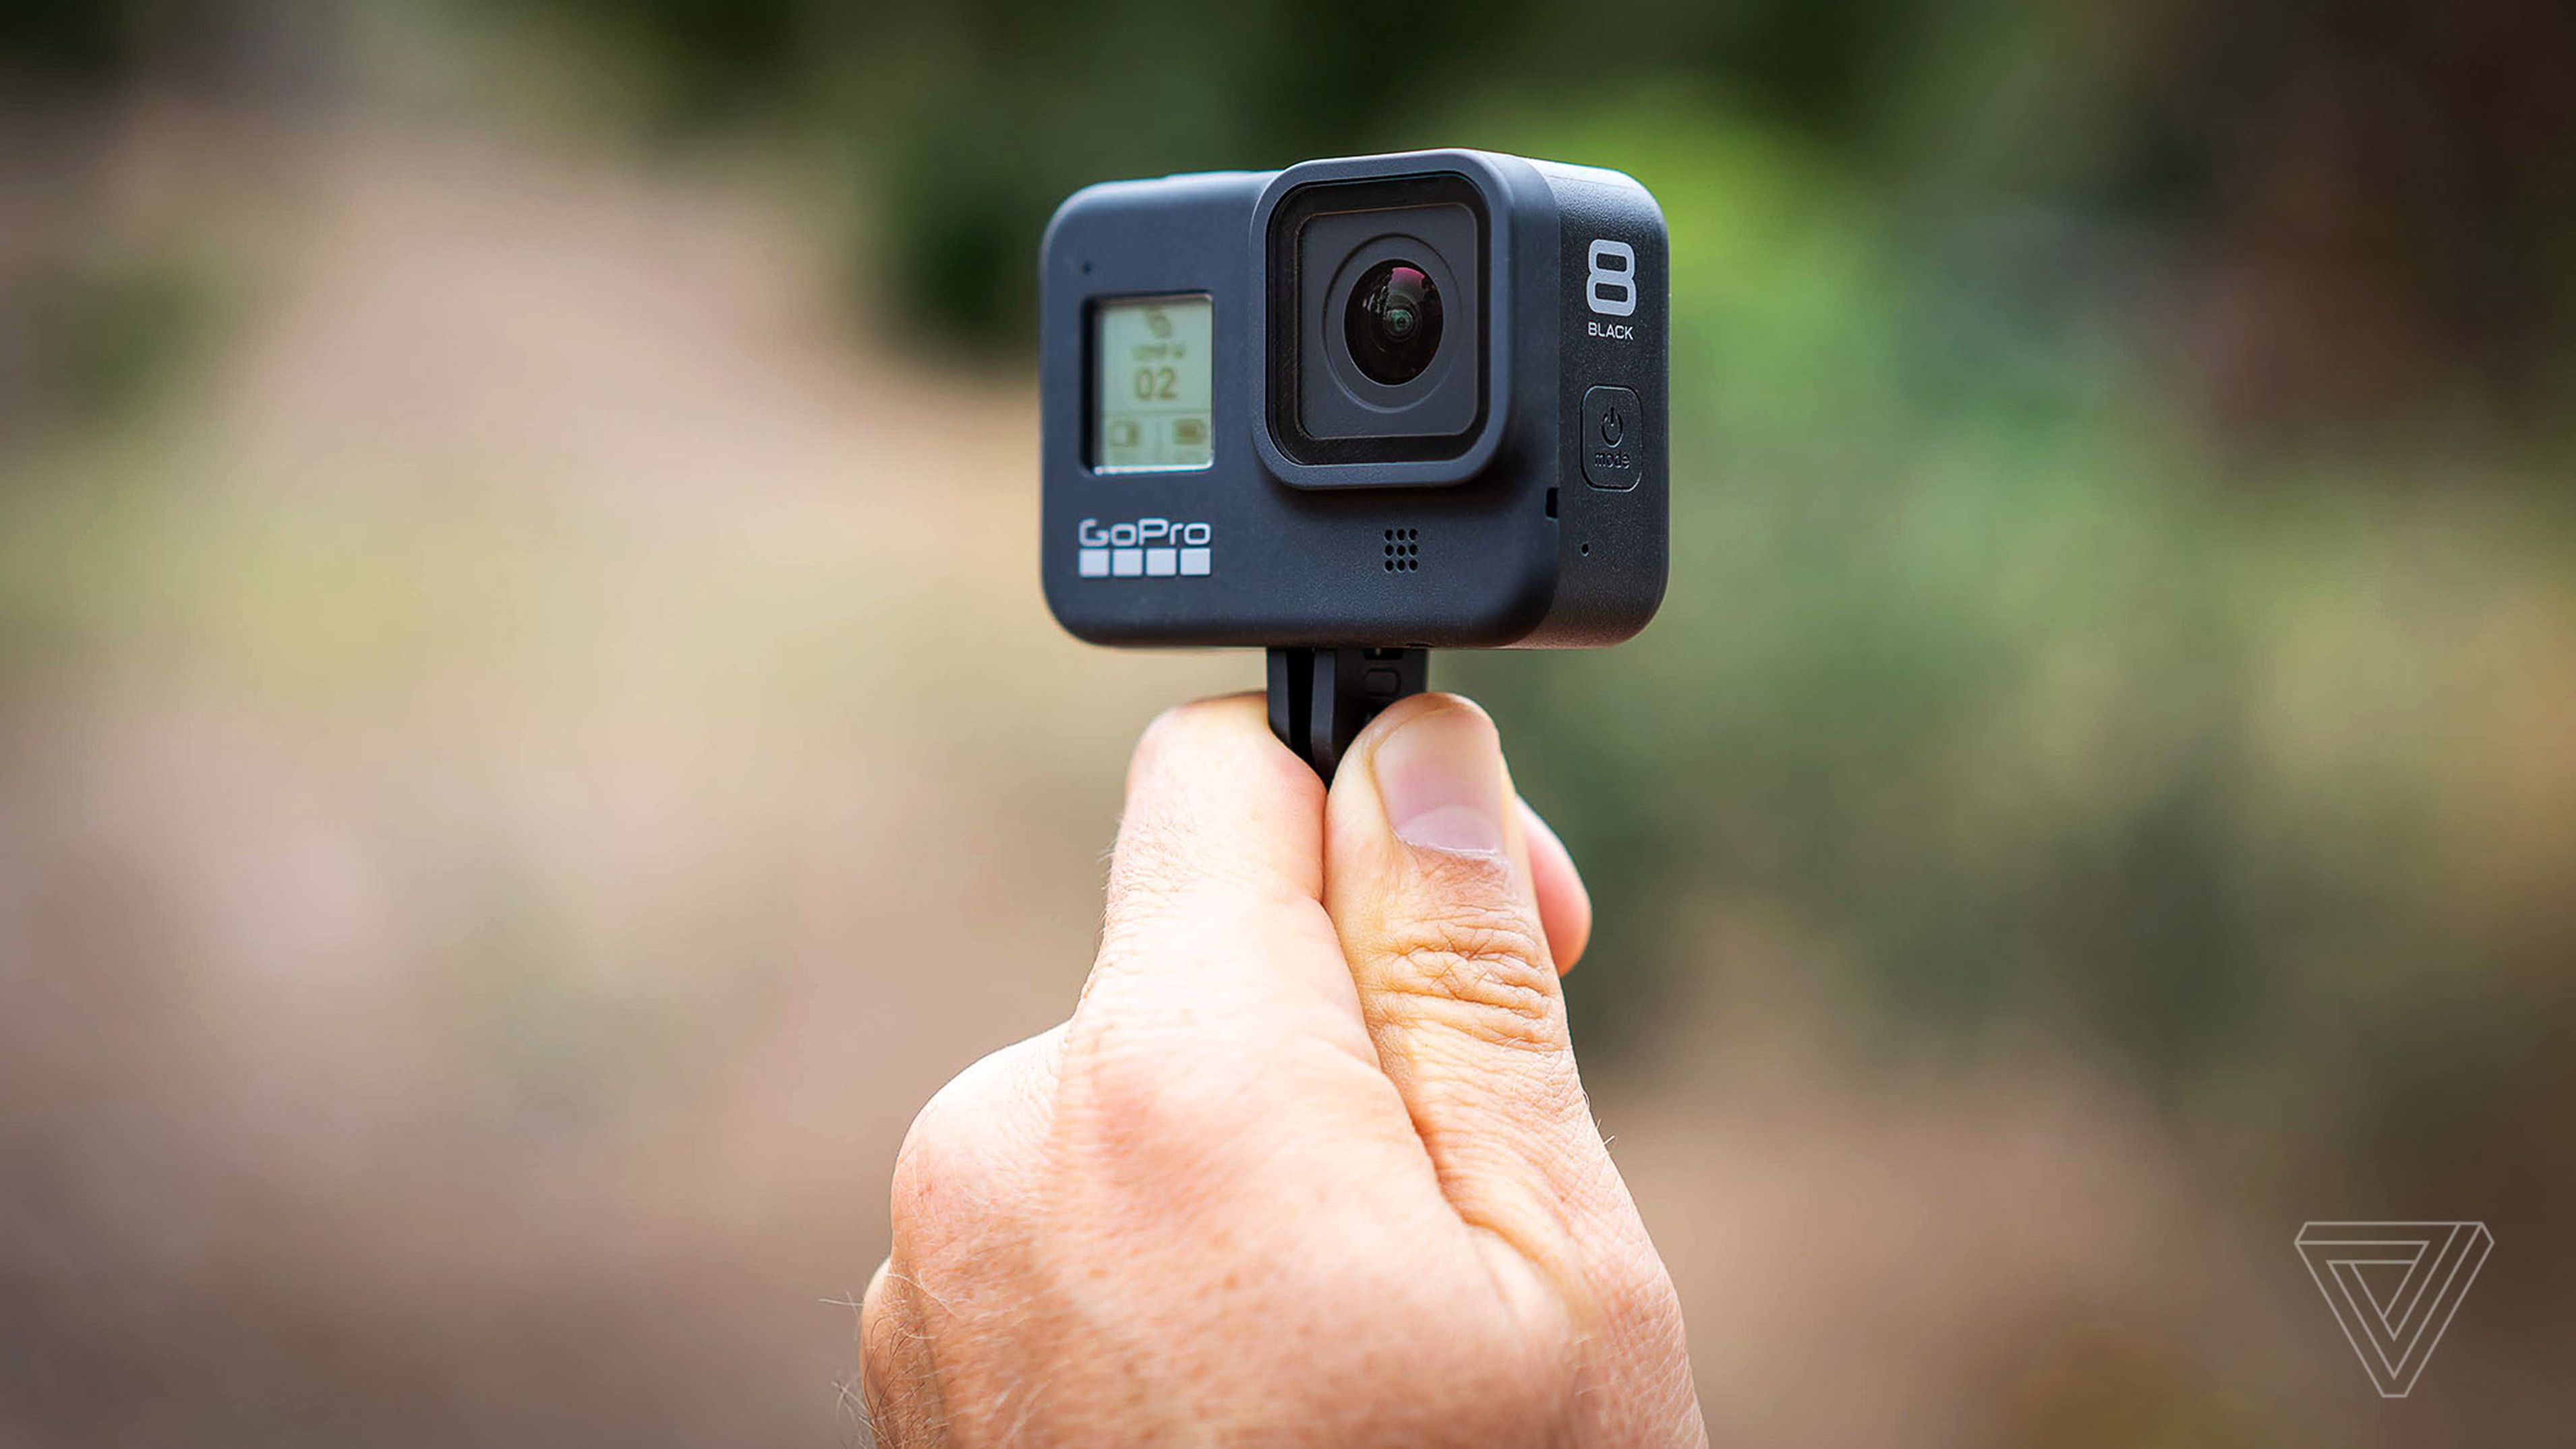 GoPro đang có ý định mở rộng sản phẩm, có thể là máy ảnh/máy quay cho người dùng chuyên nghiệp